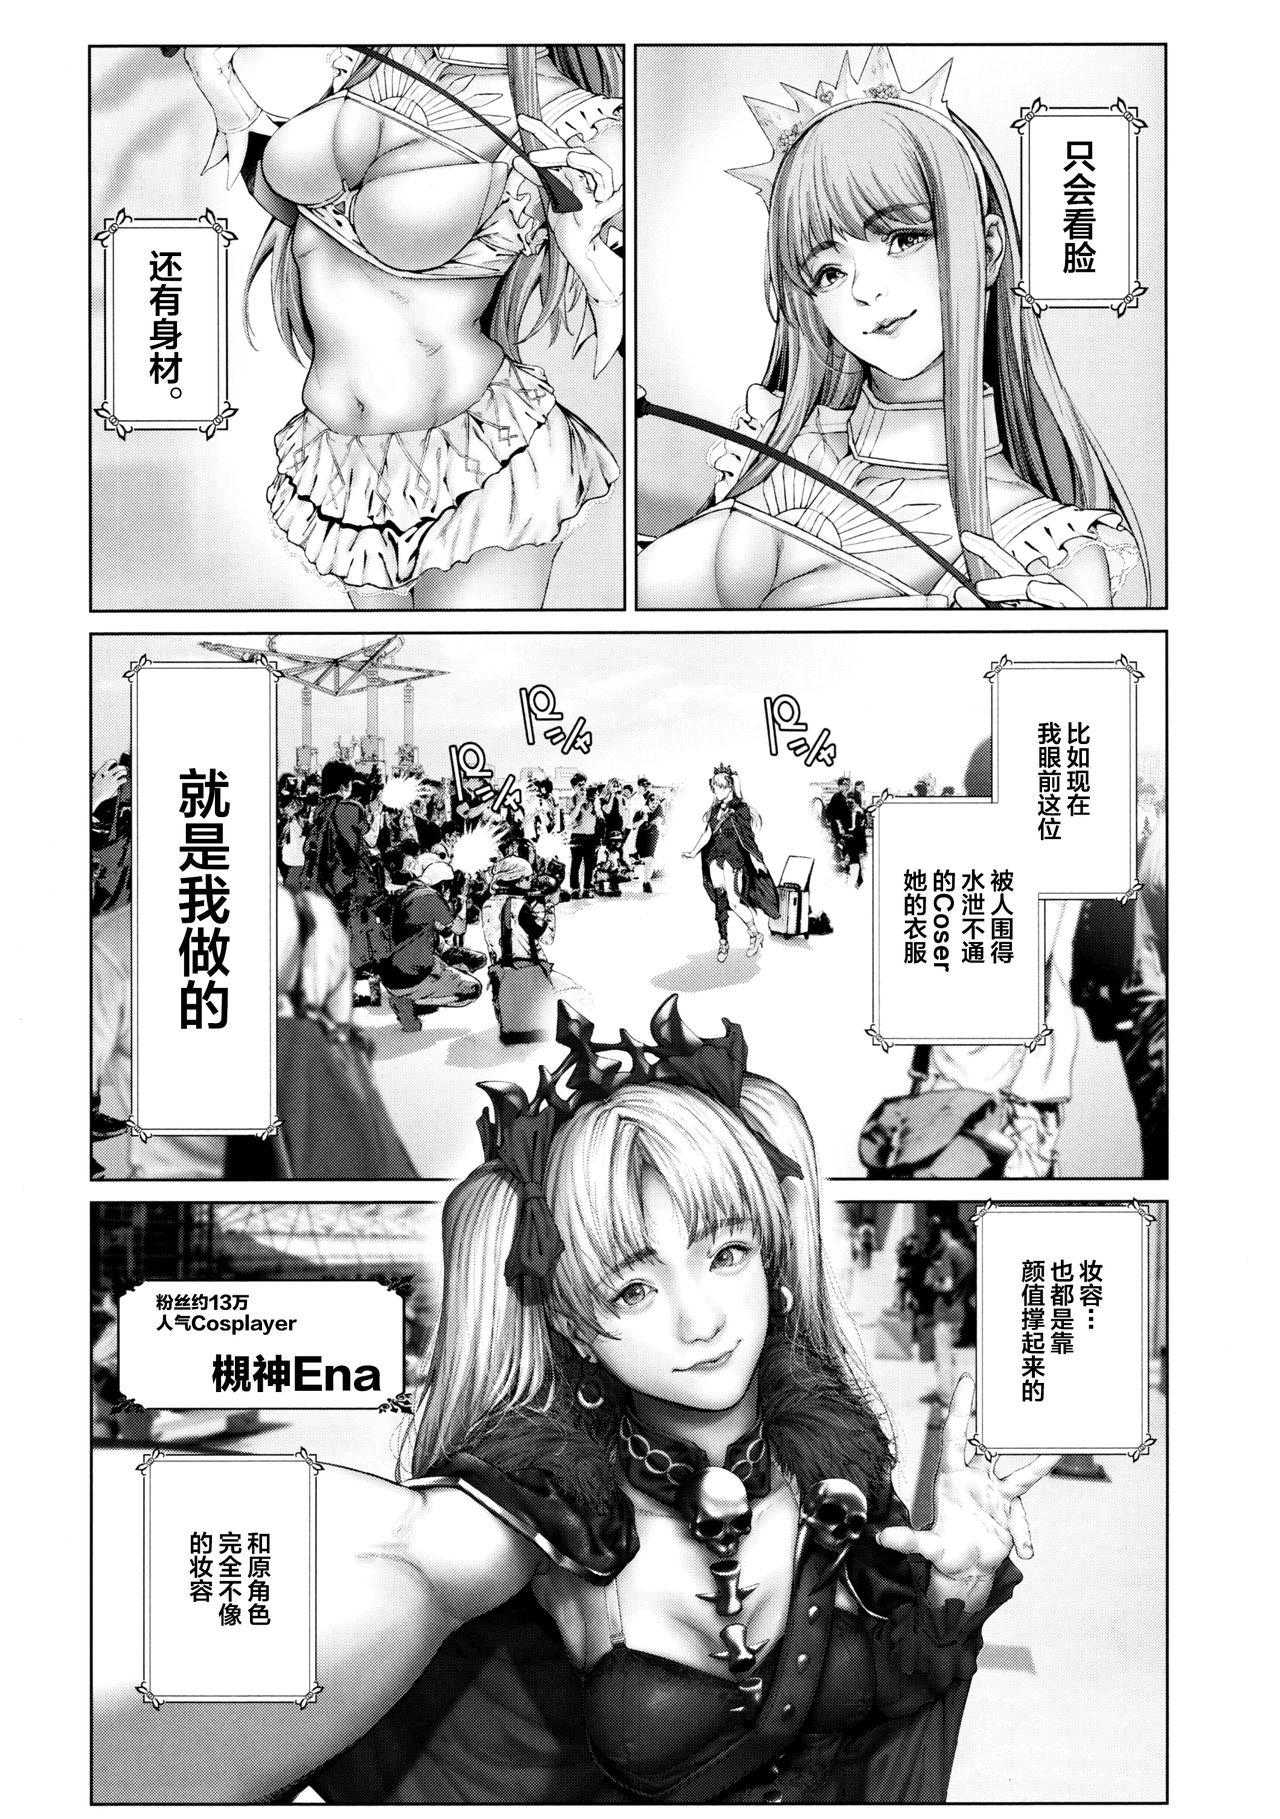 Facesitting Cos wa Midara na Kamen Ninki Ikemen Layer no SeFri Ken Ishou Seisaku Tantou no Zoukei Layer wa Honmei Kanojo no Yume o Miru ka - Fate grand order Letsdoeit - Page 6